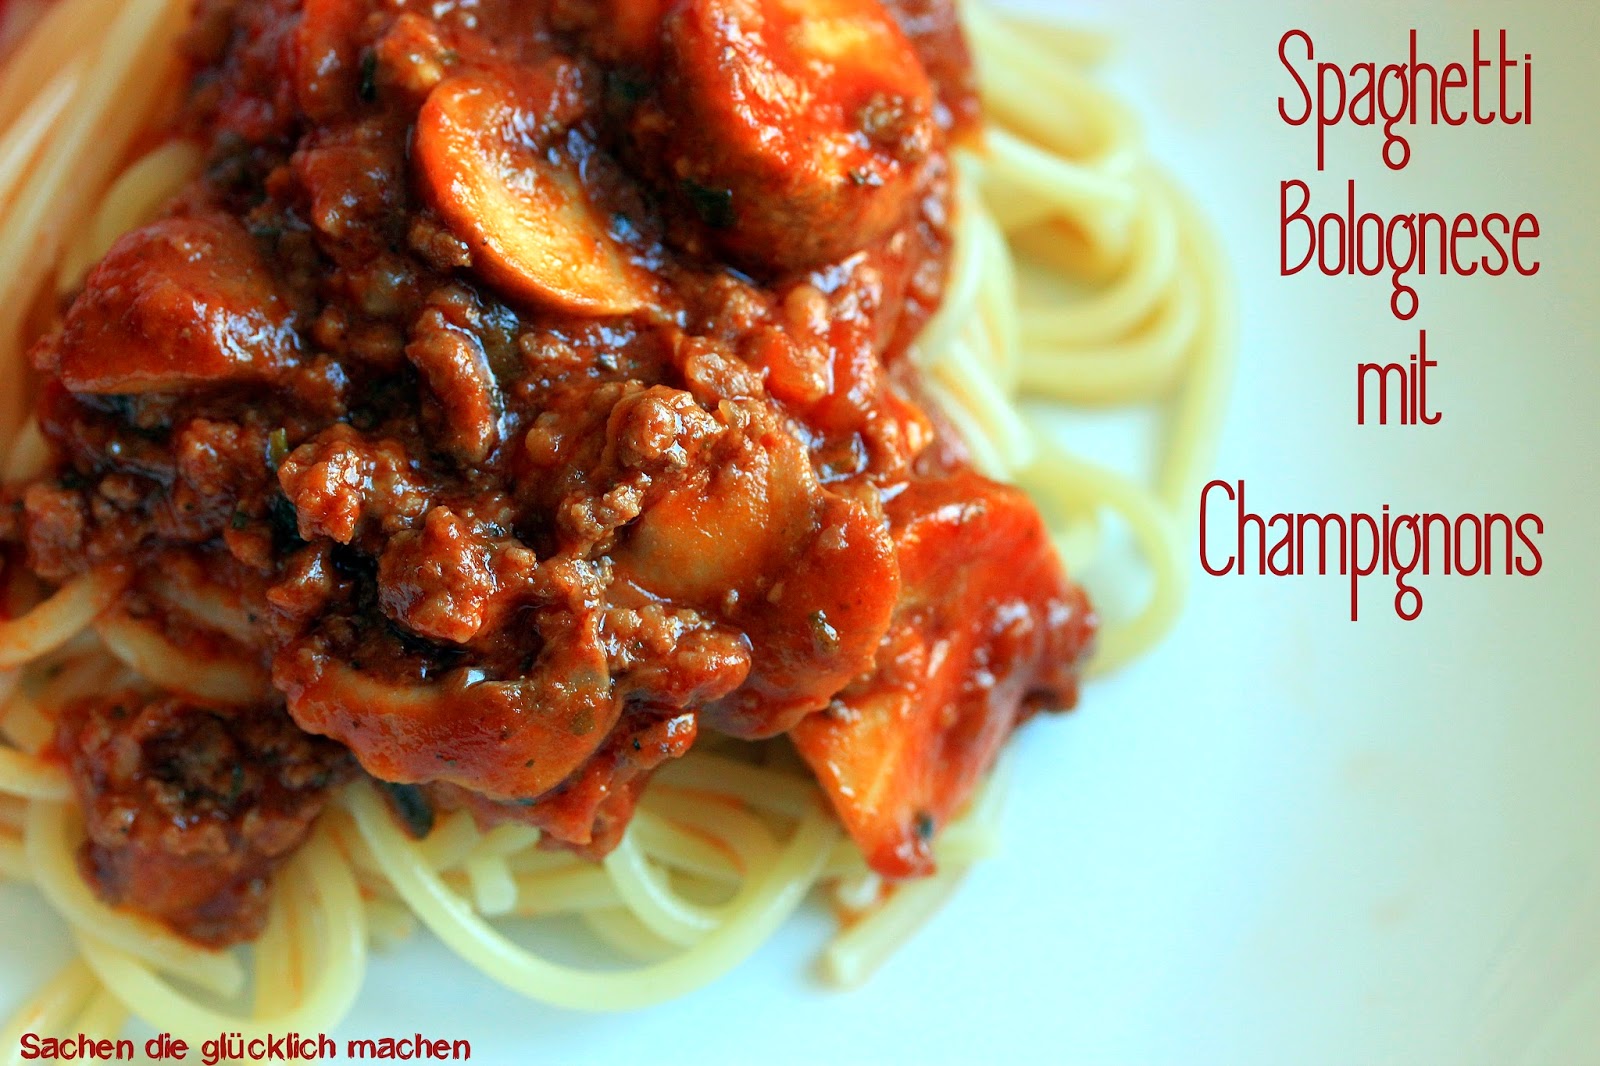 Sachen die glücklich machen: Spaghetti Bolognese mit Champignons